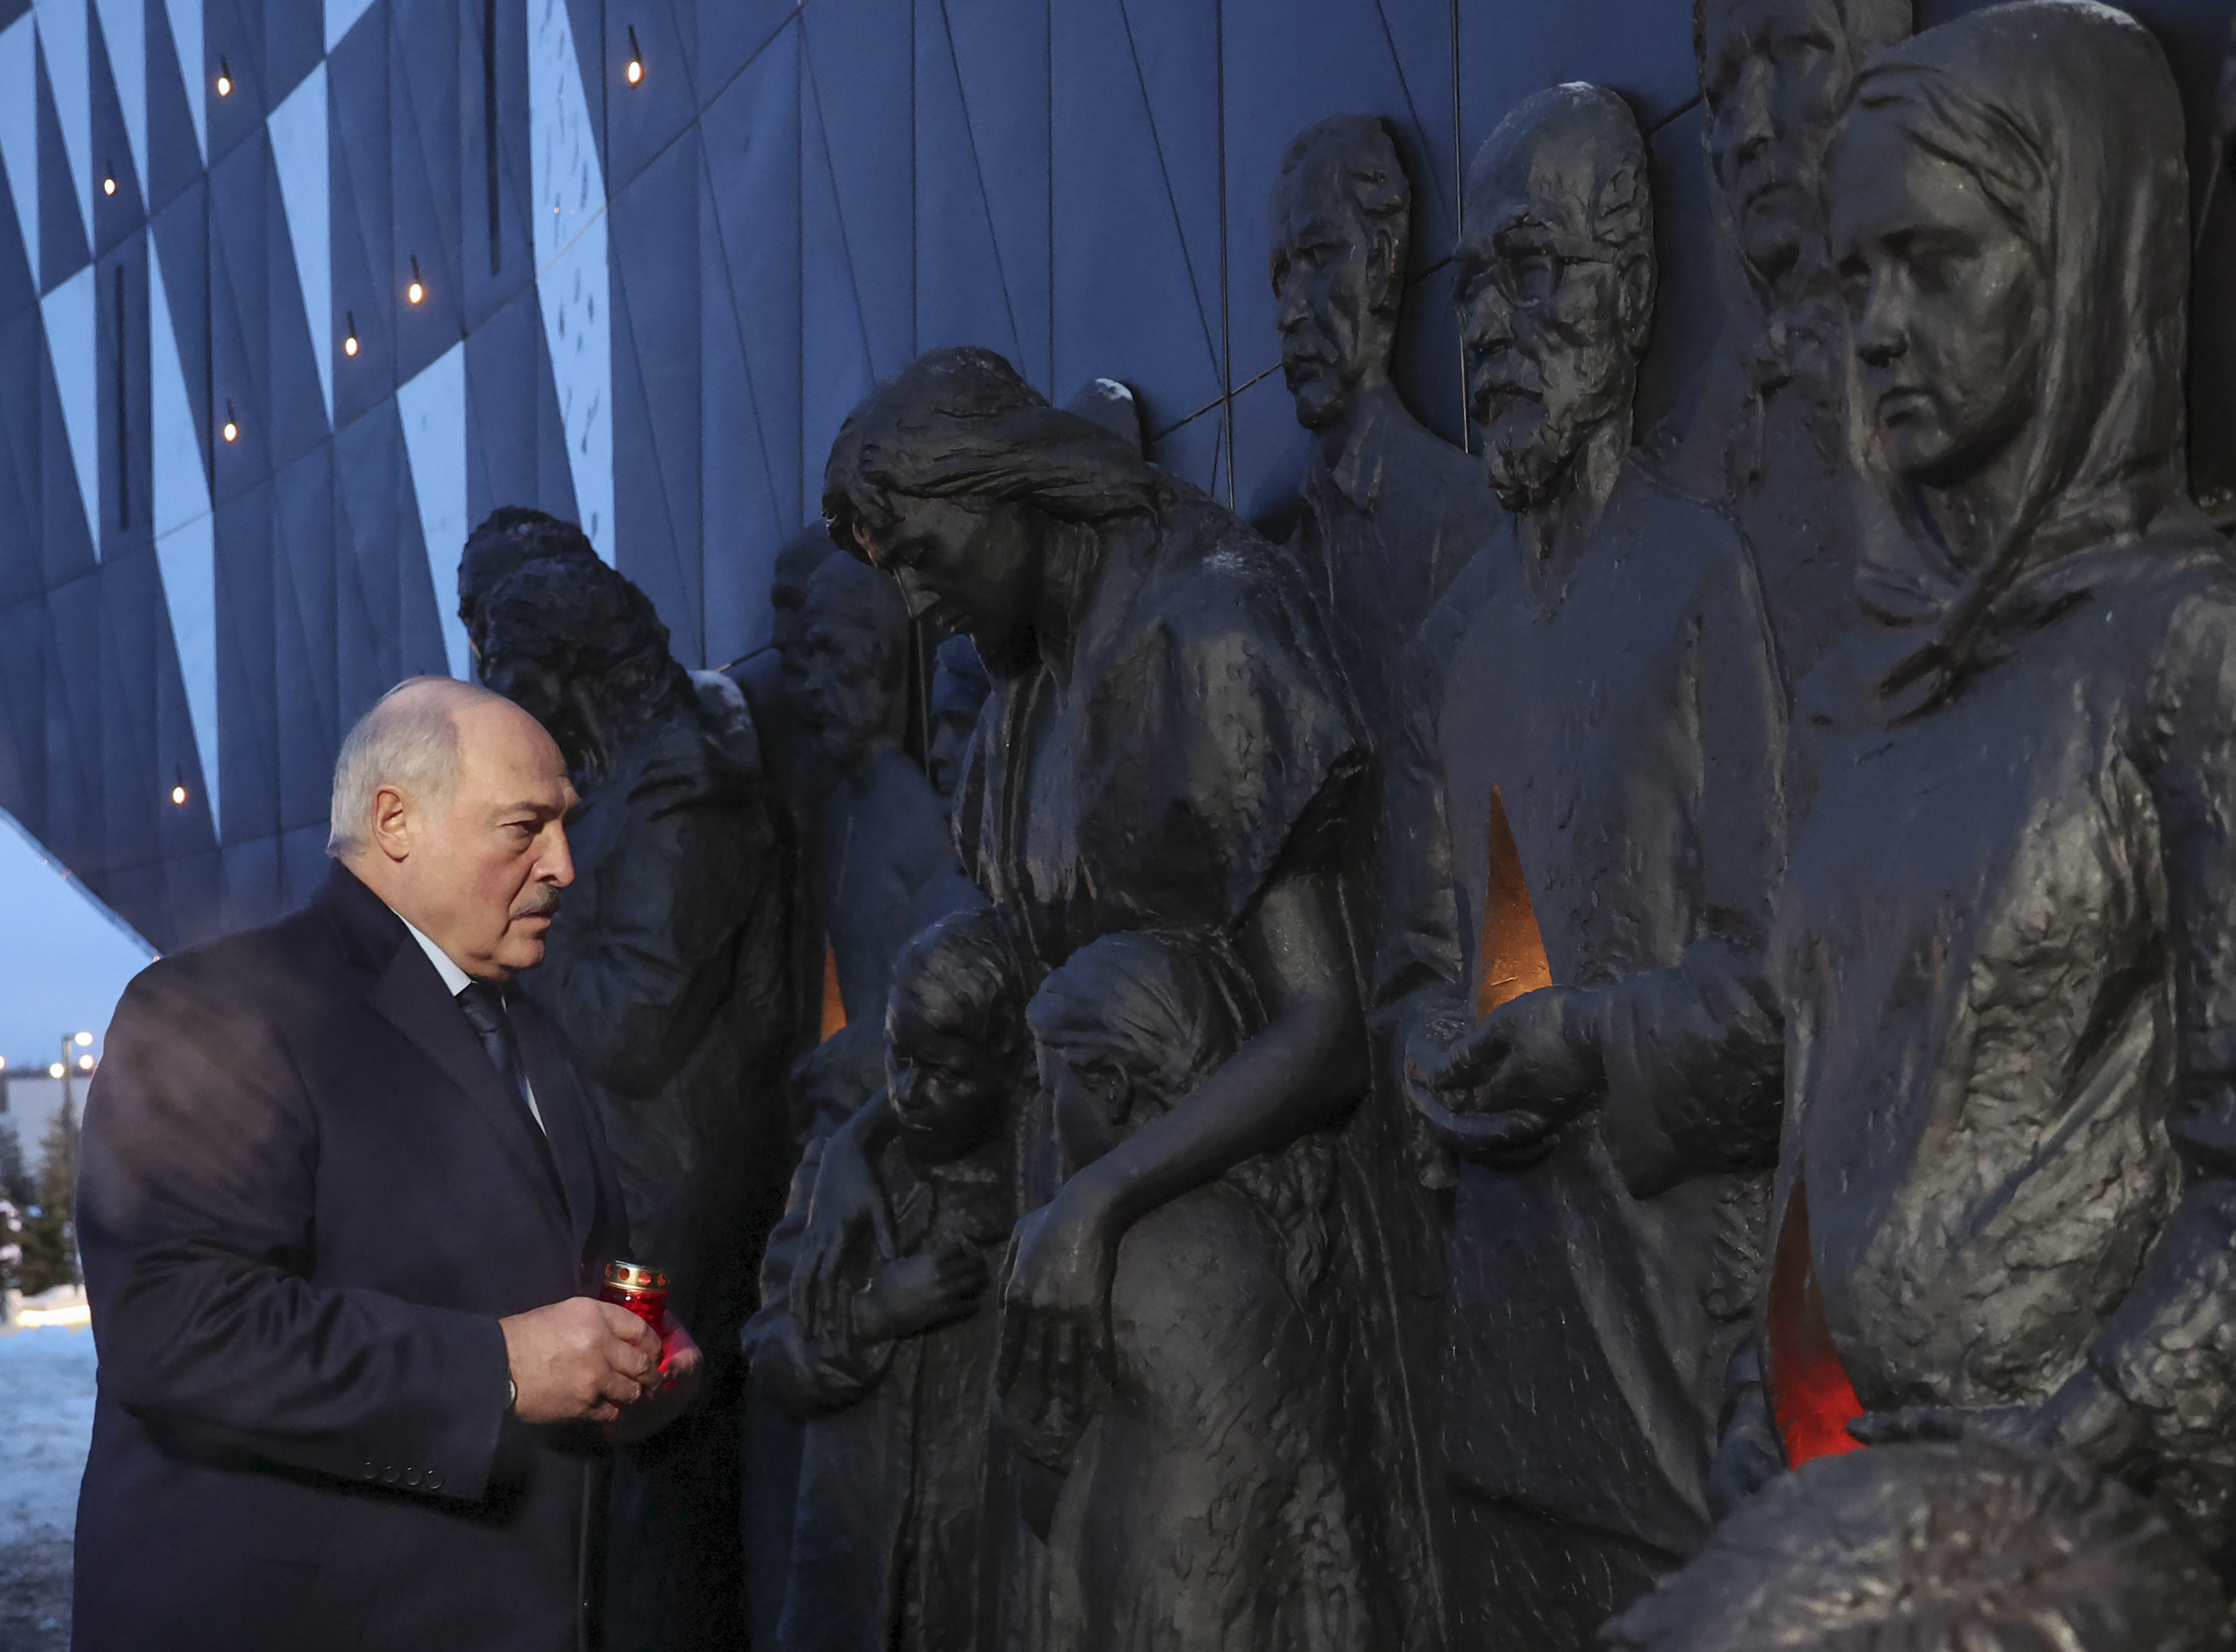 Торжественная церемония открытия Мемориала в память о советских гражданах – жертвах геноцида со стороны нацистов и их пособников в годы Великой Отечественной войны